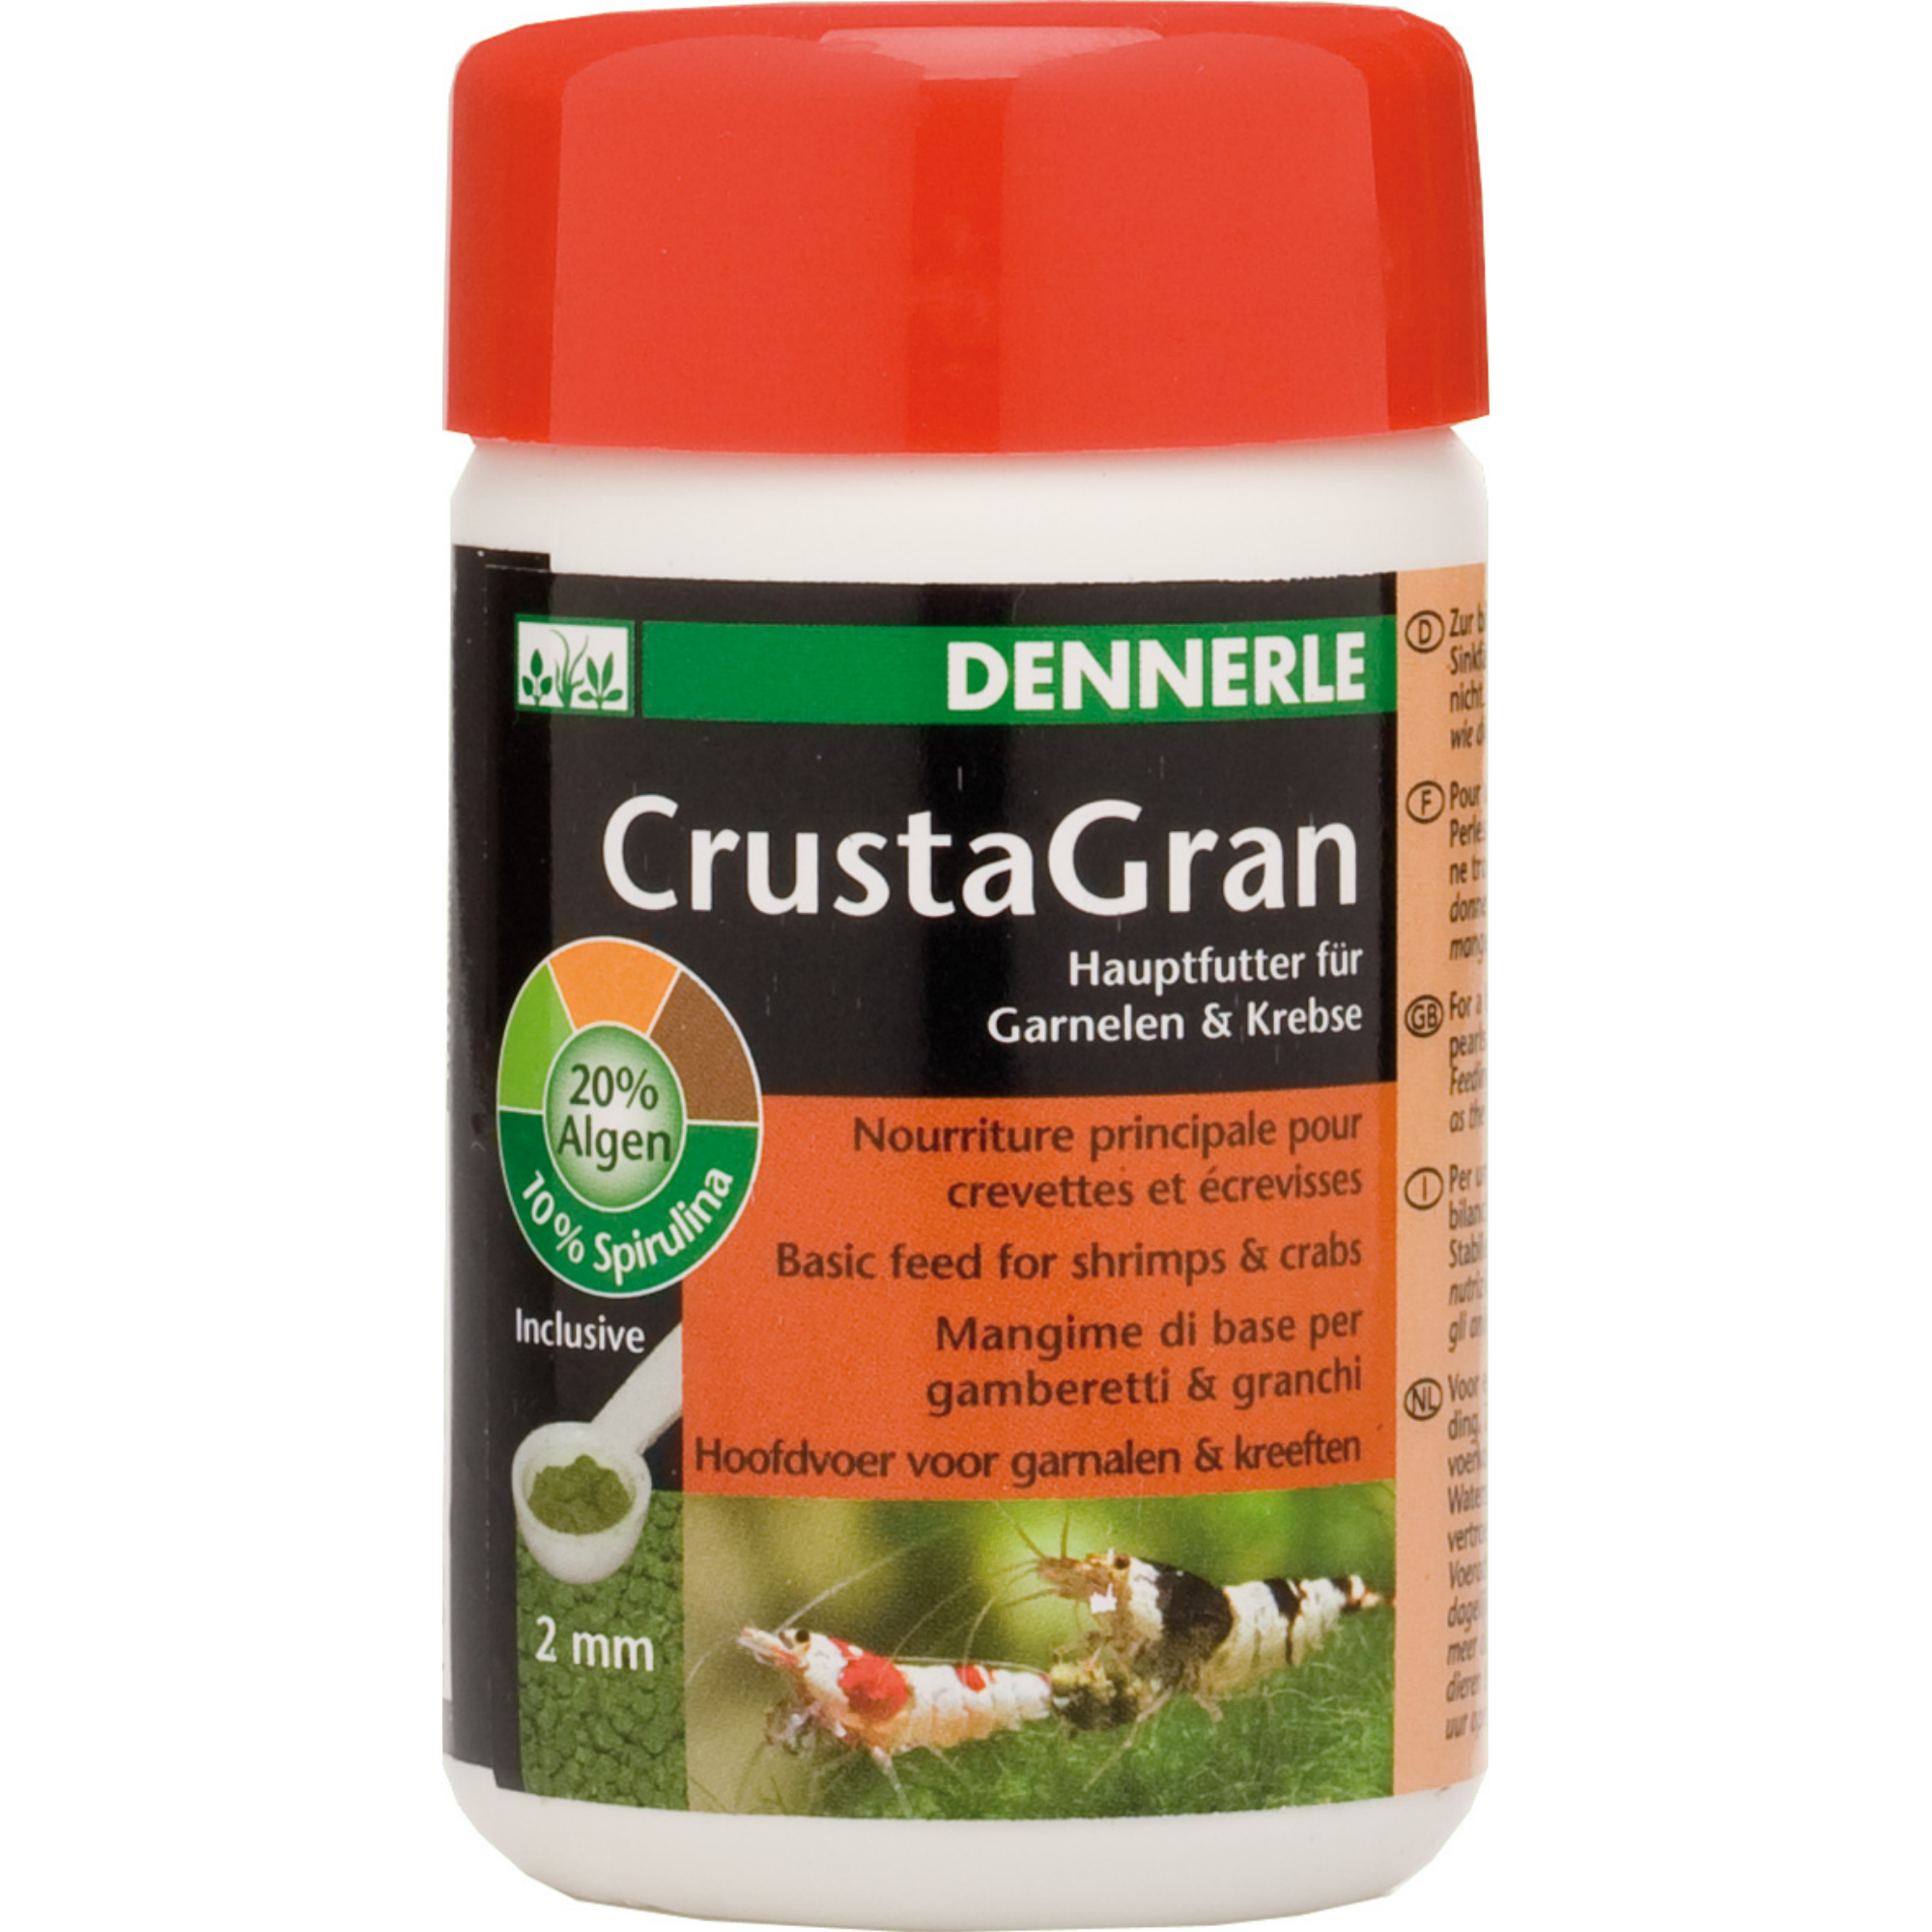 CrustaGran 100 ml "Garnelen" + product picture